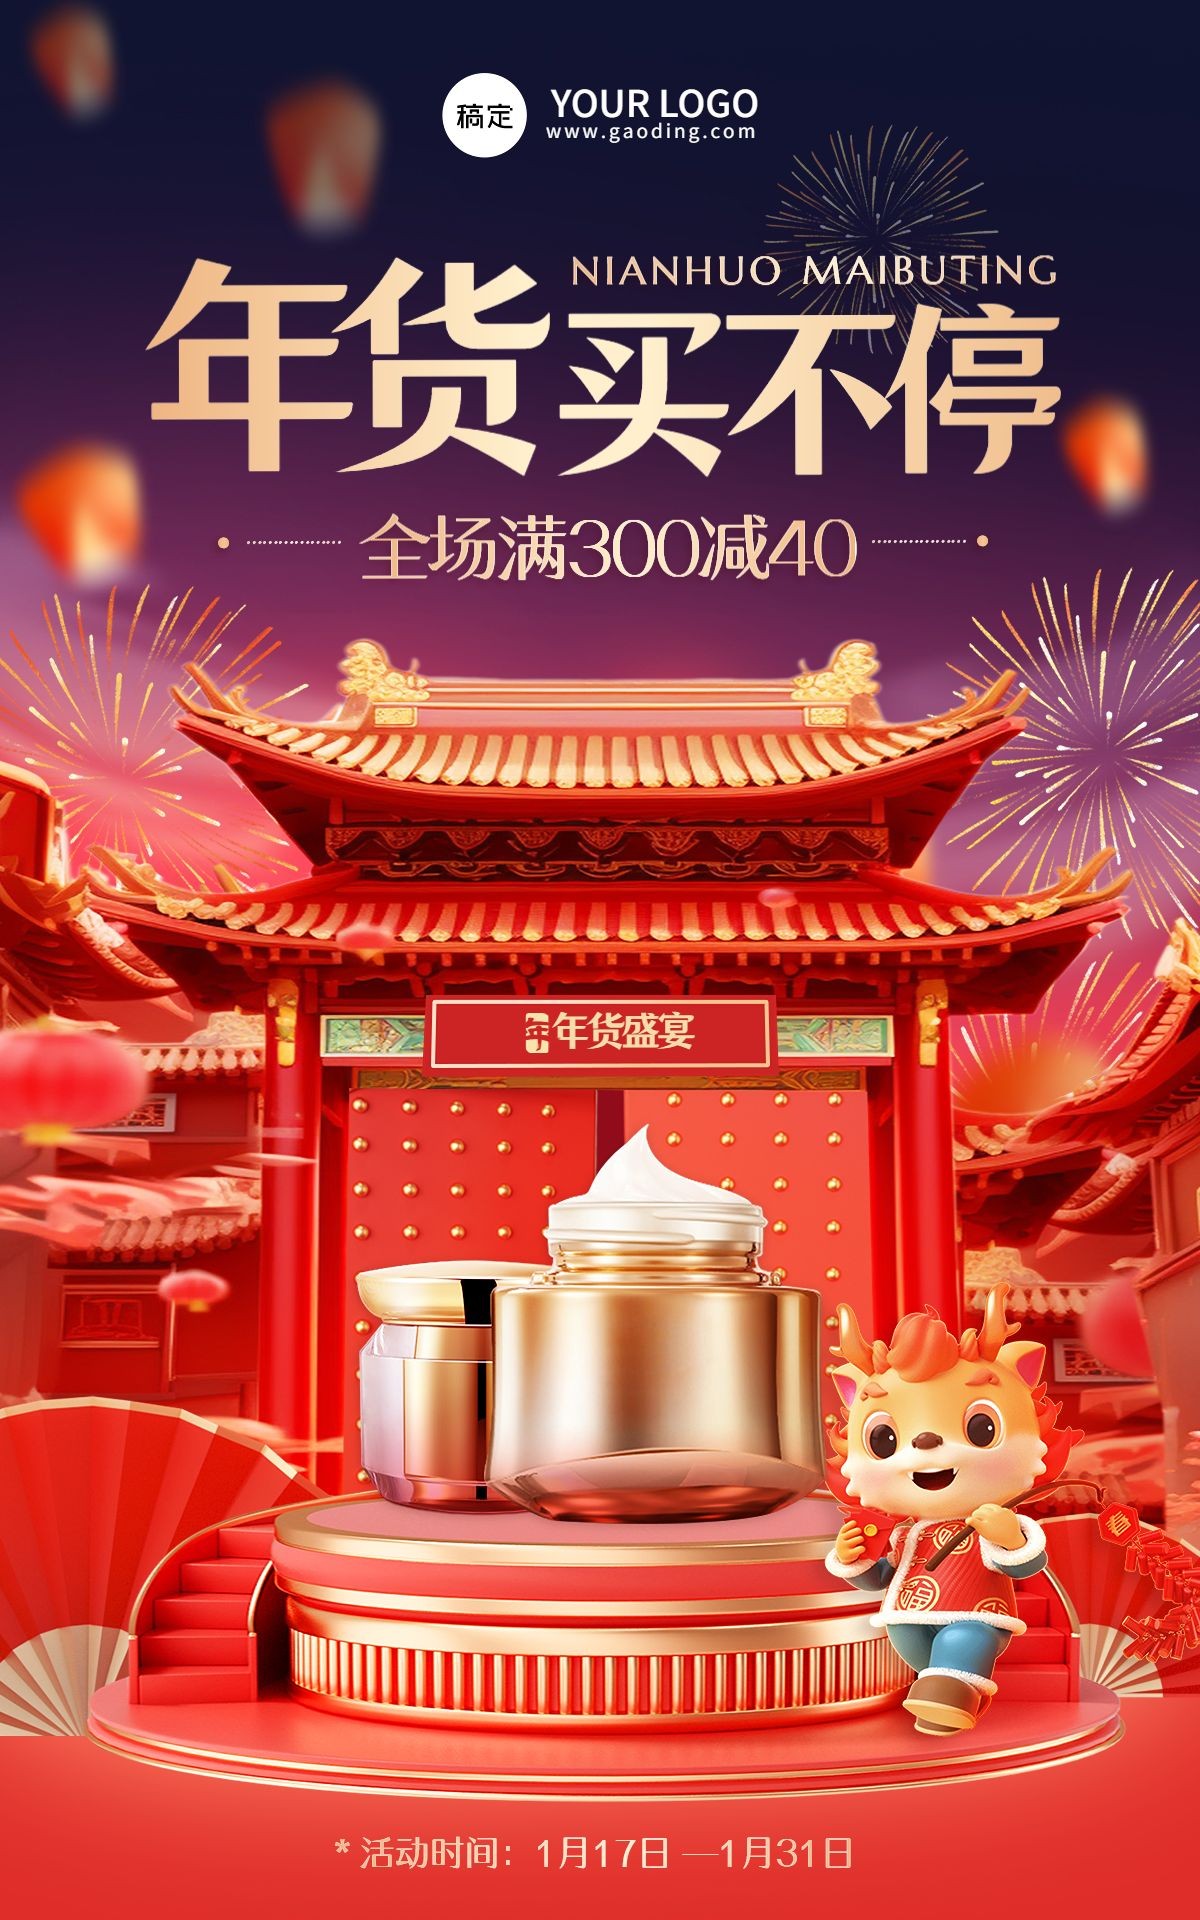 3D建筑生肖喜庆年货节美容美妆护肤品电商竖版海报AIGC